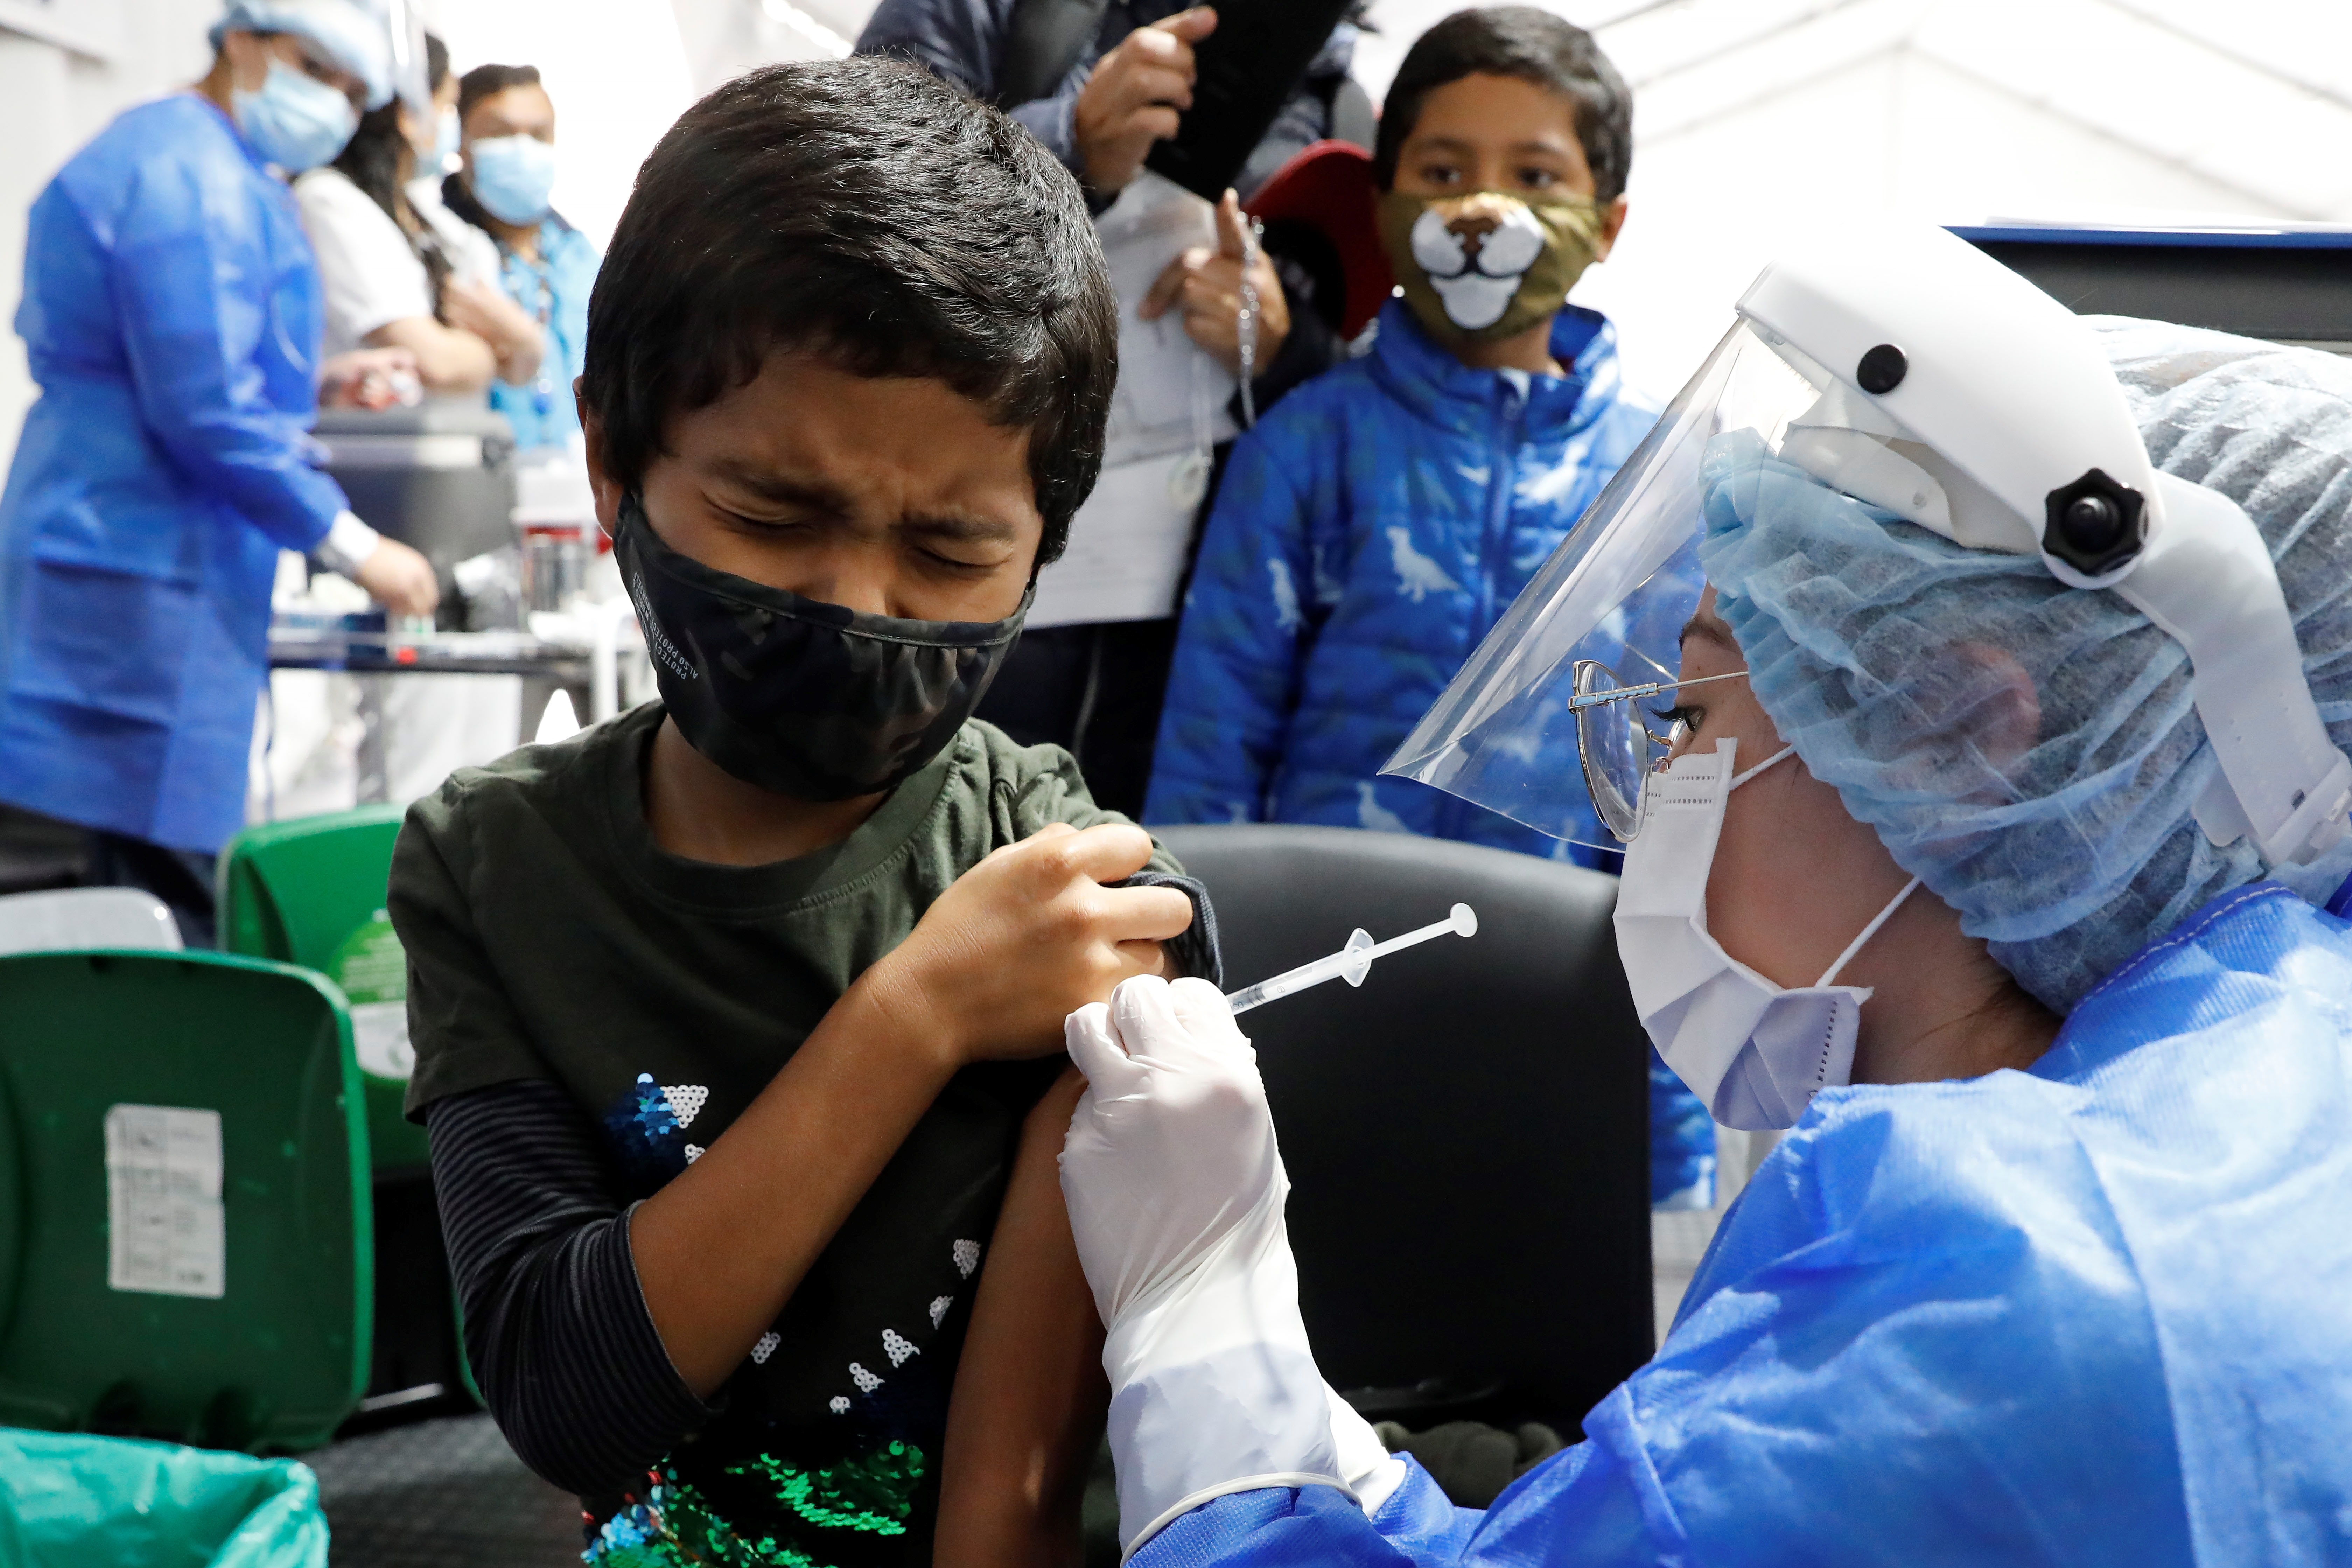 Fotografía de archivo en la que se registró a un niño al ser vacunado contra COVID-19 (Foto: EFE/Carlos Ortega)